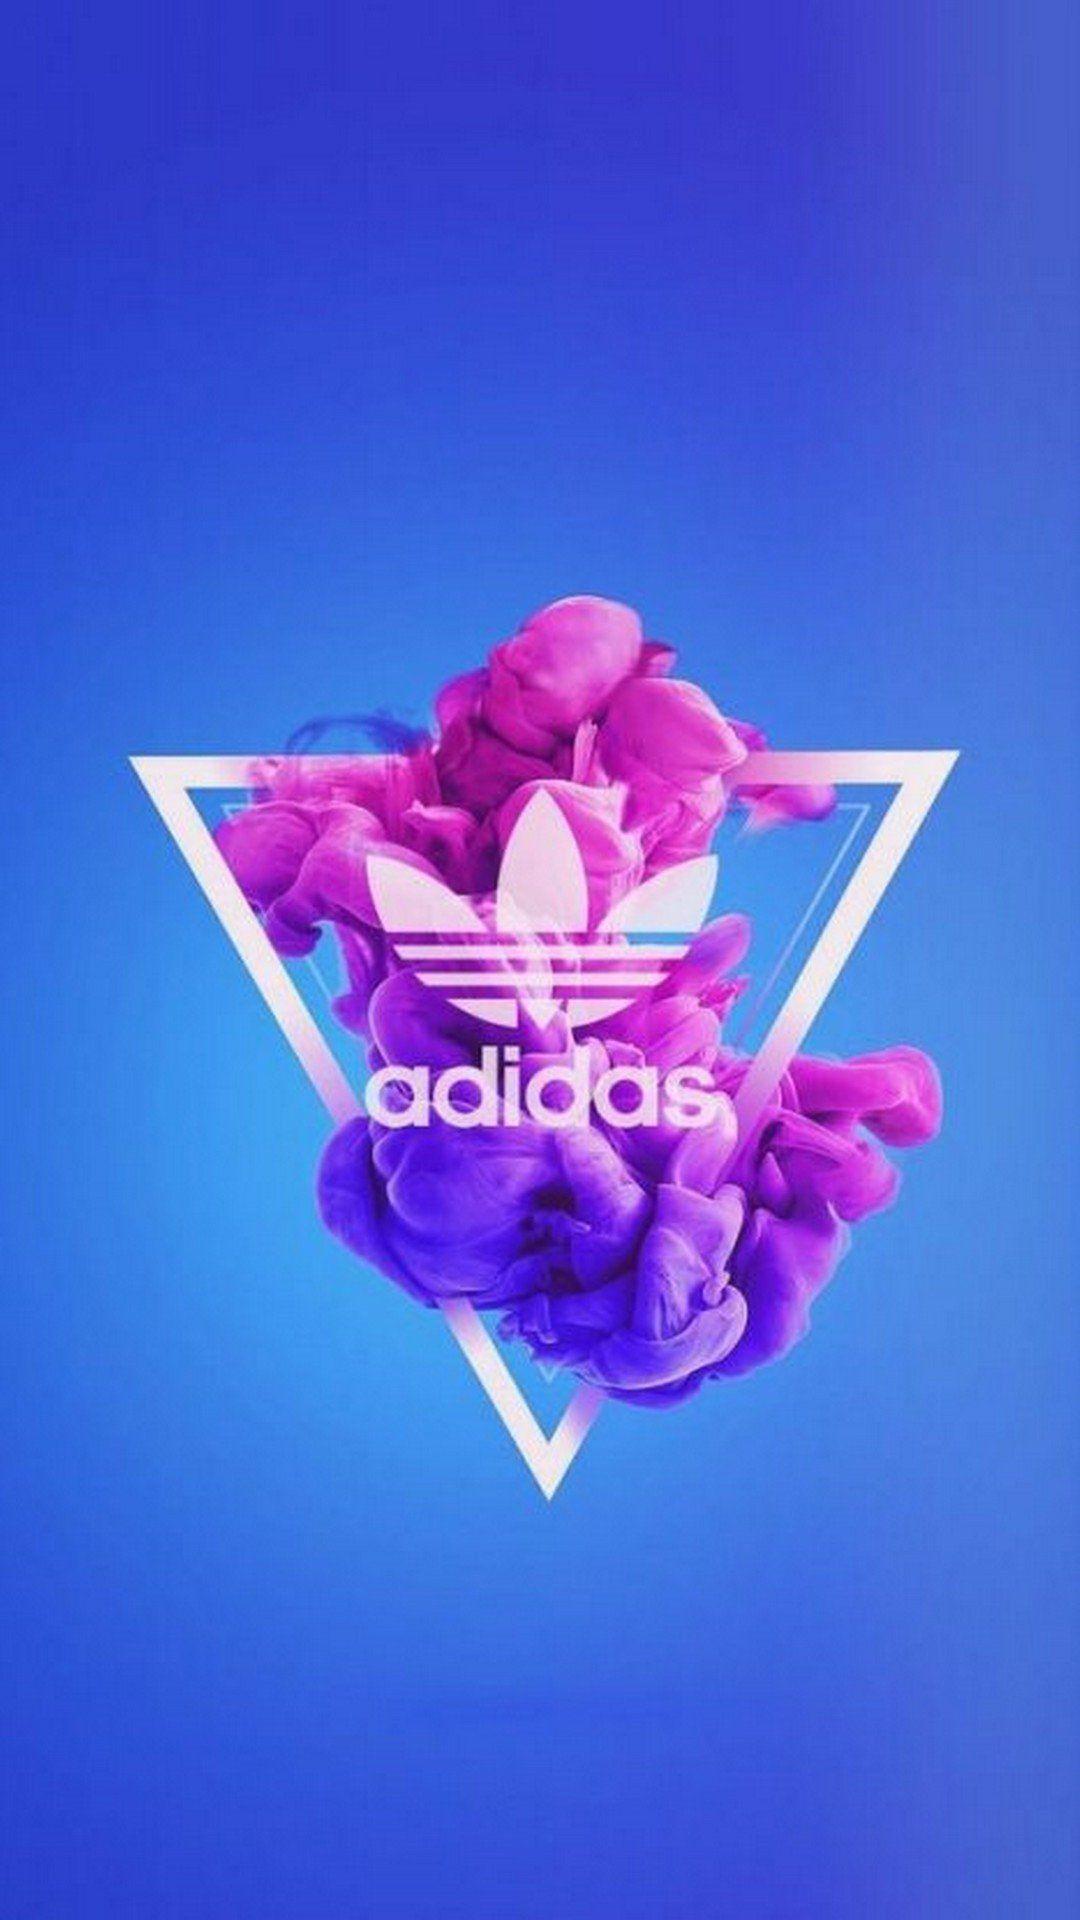 Hình nền Adidas 1080x1920 Với hoa hồng